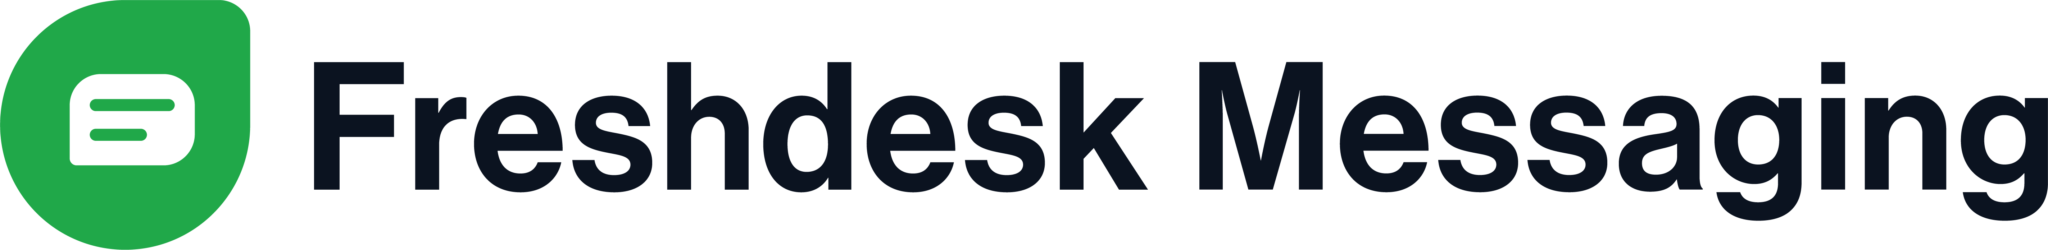 logo wiadomości freshdesk